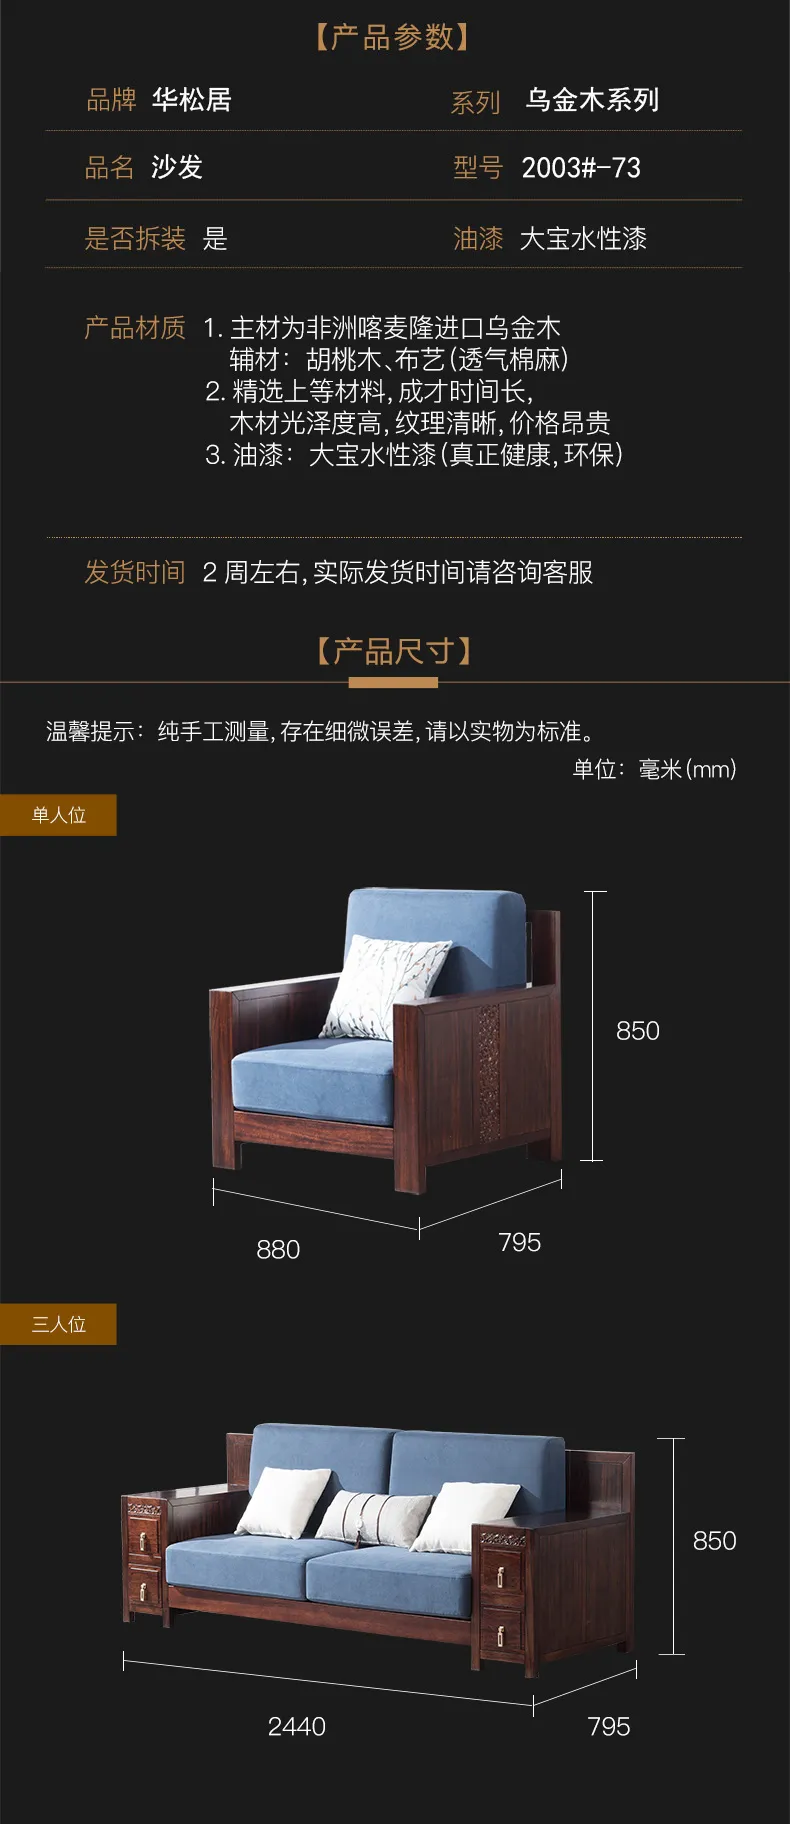 华松居 新中式沙发乌金木大户型客厅组合沙发新中式家具 #2003(图2)